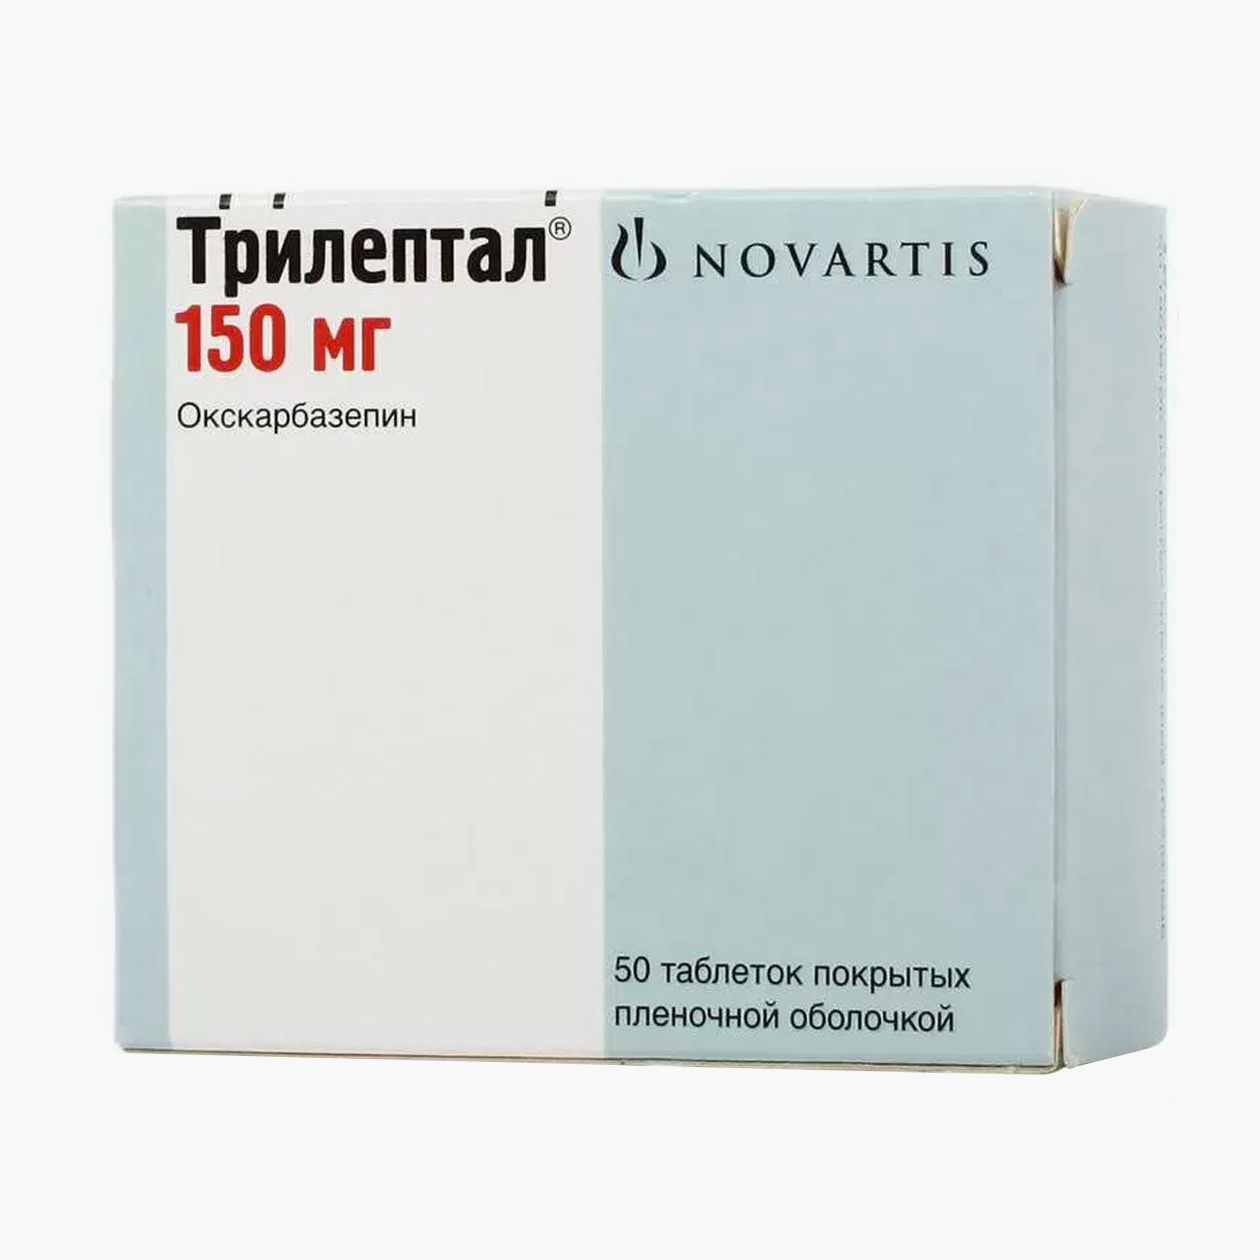 Цена за упаковку с 50 таблетками окскарбазепина по 150 мг начинается от 285 ₽. Источник: asna.ru